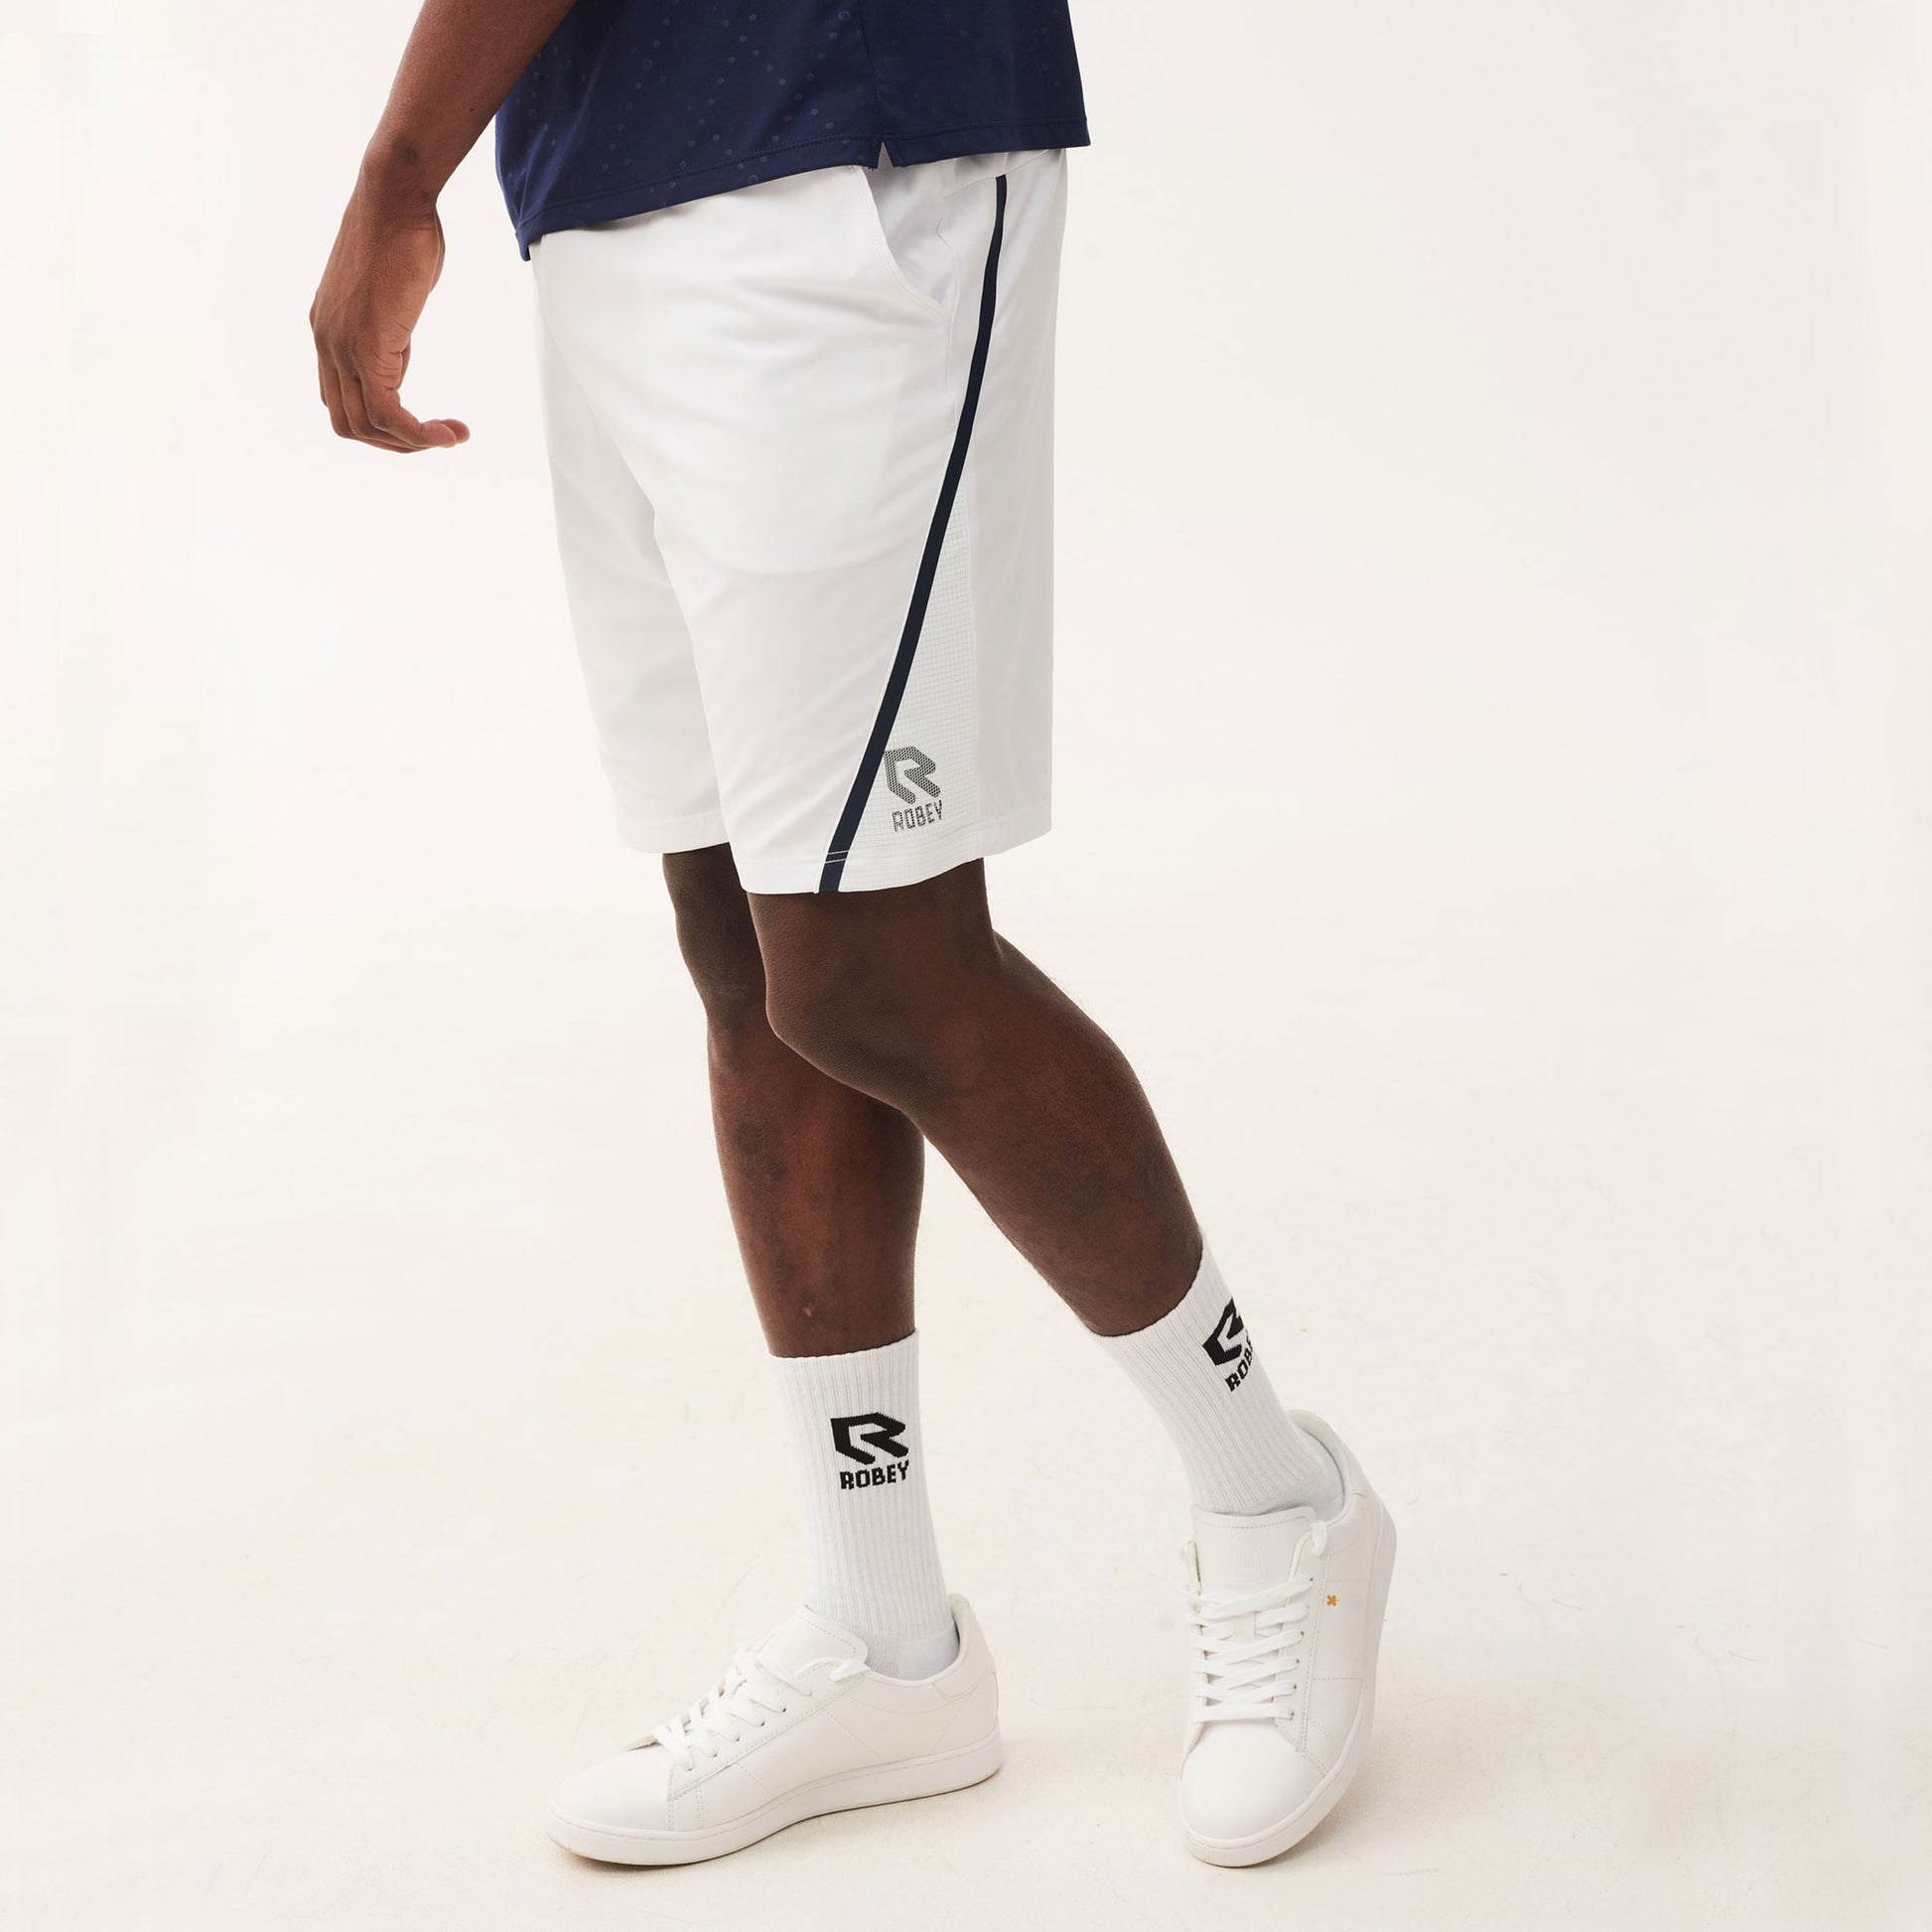 Robey Grip Men's 9-Inch Tennis Shorts White/Dark Blue (2)